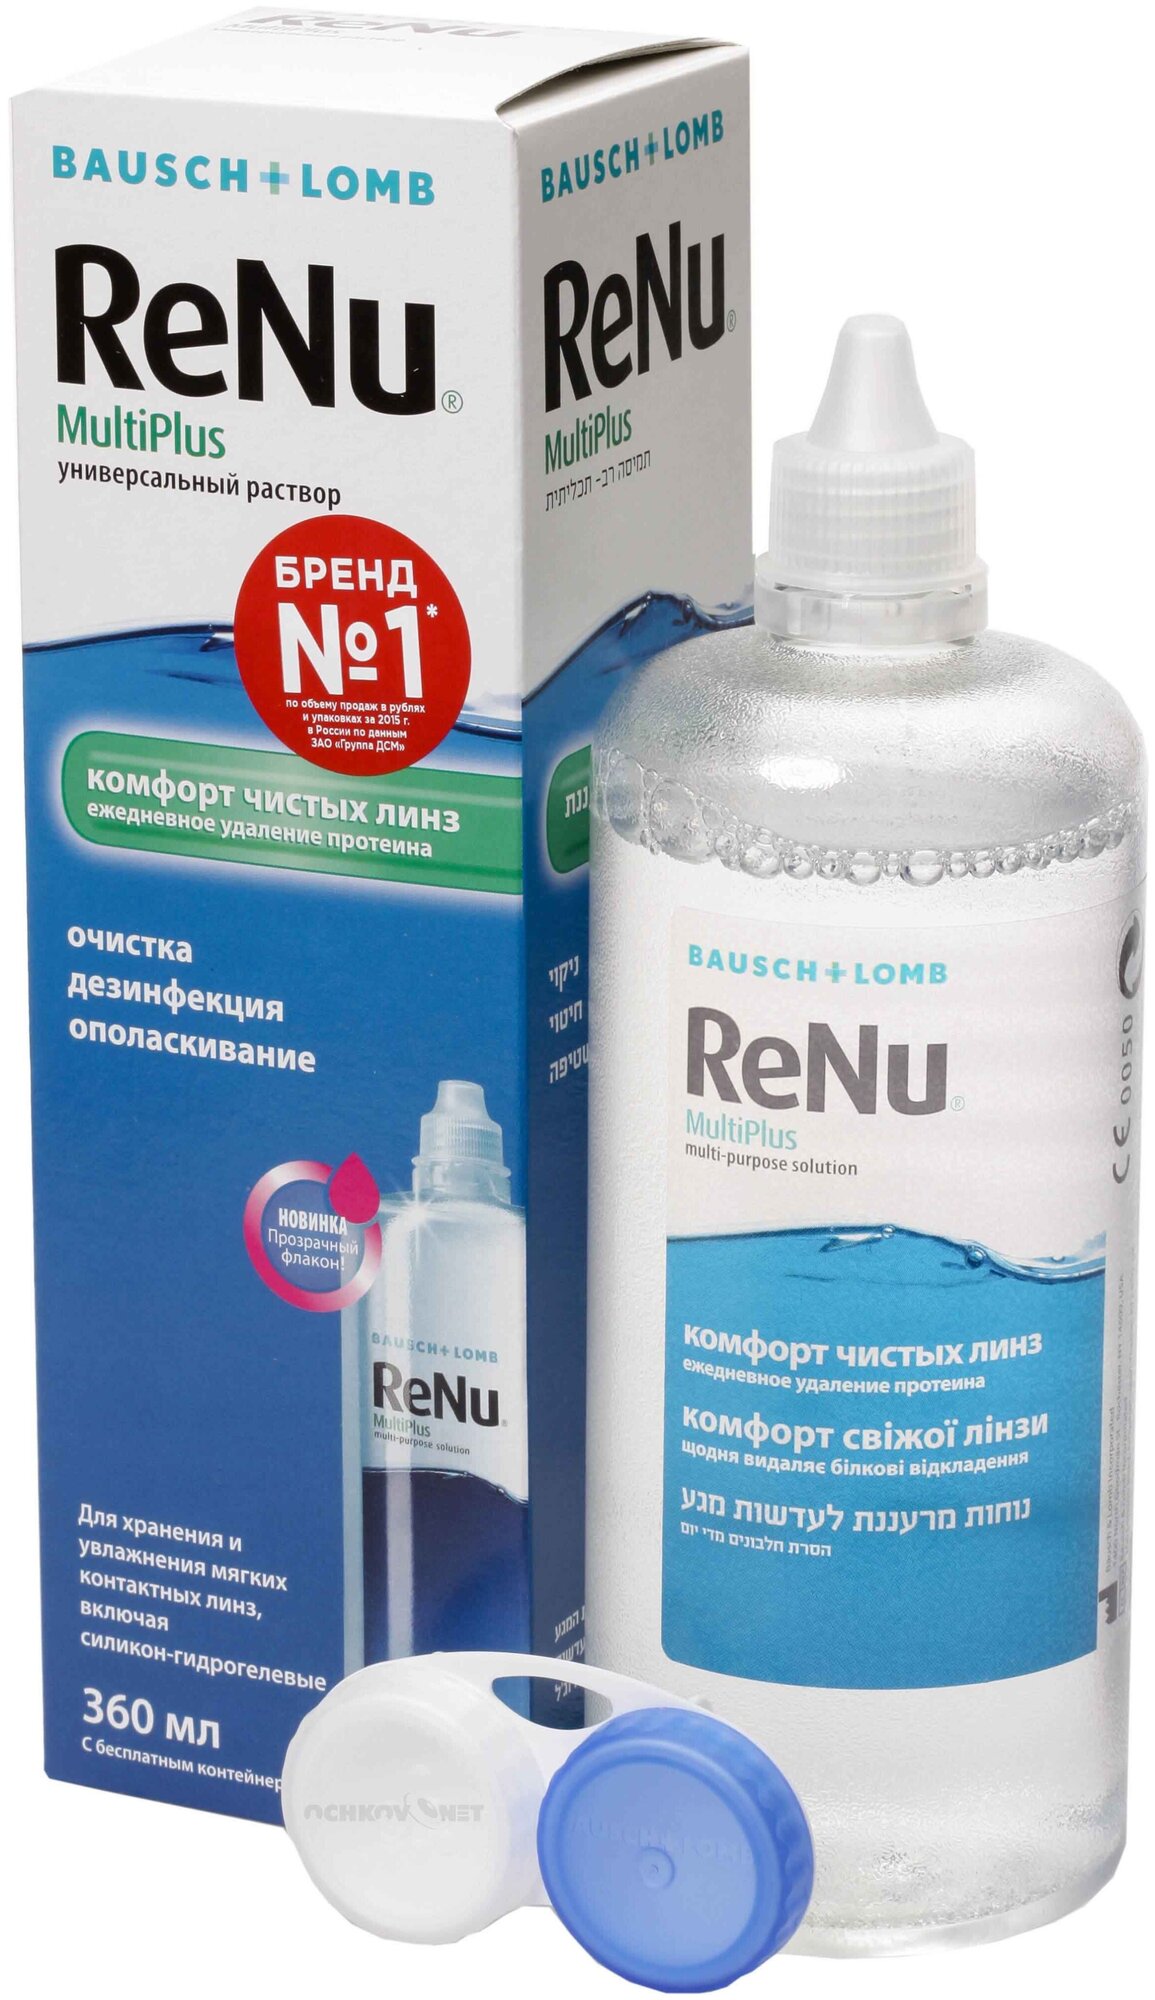 Раствор ReNu Multiplus для ухода за контактными линзами с протеиновым очистителем-гидранатом 360 мл.